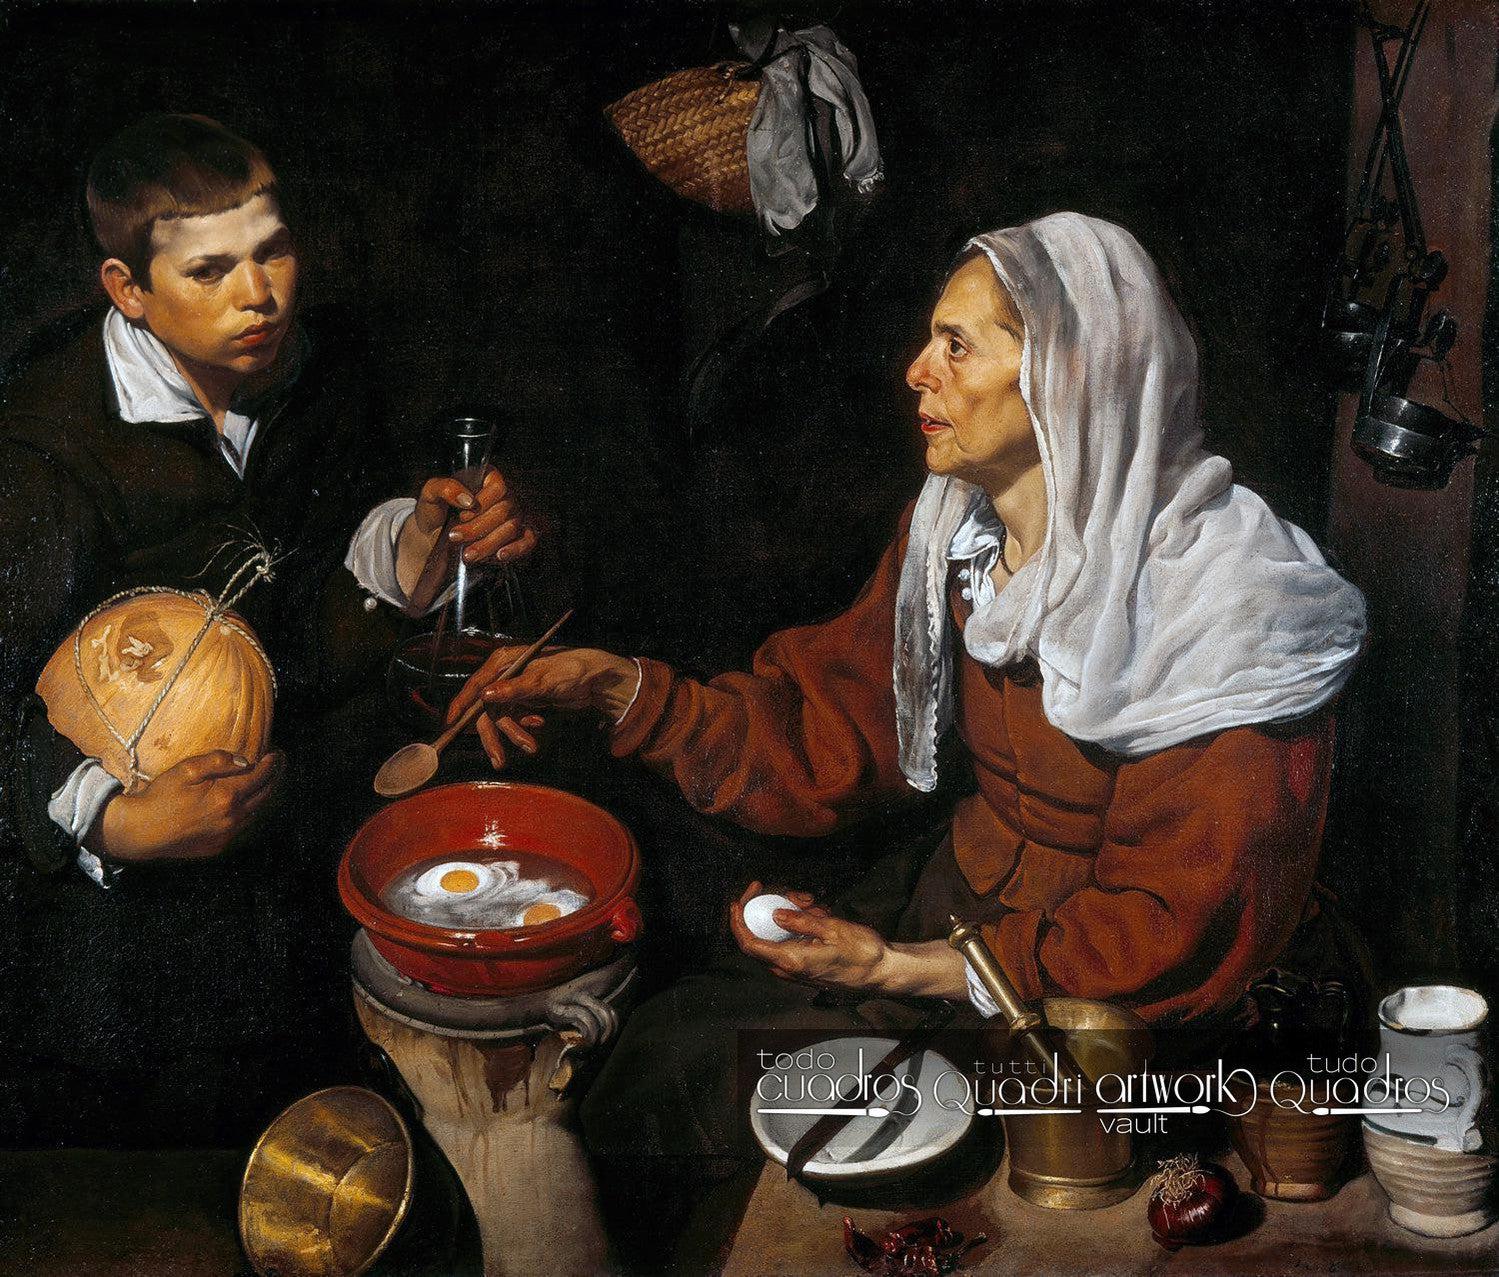 Velha fritando ovos, Velázquez